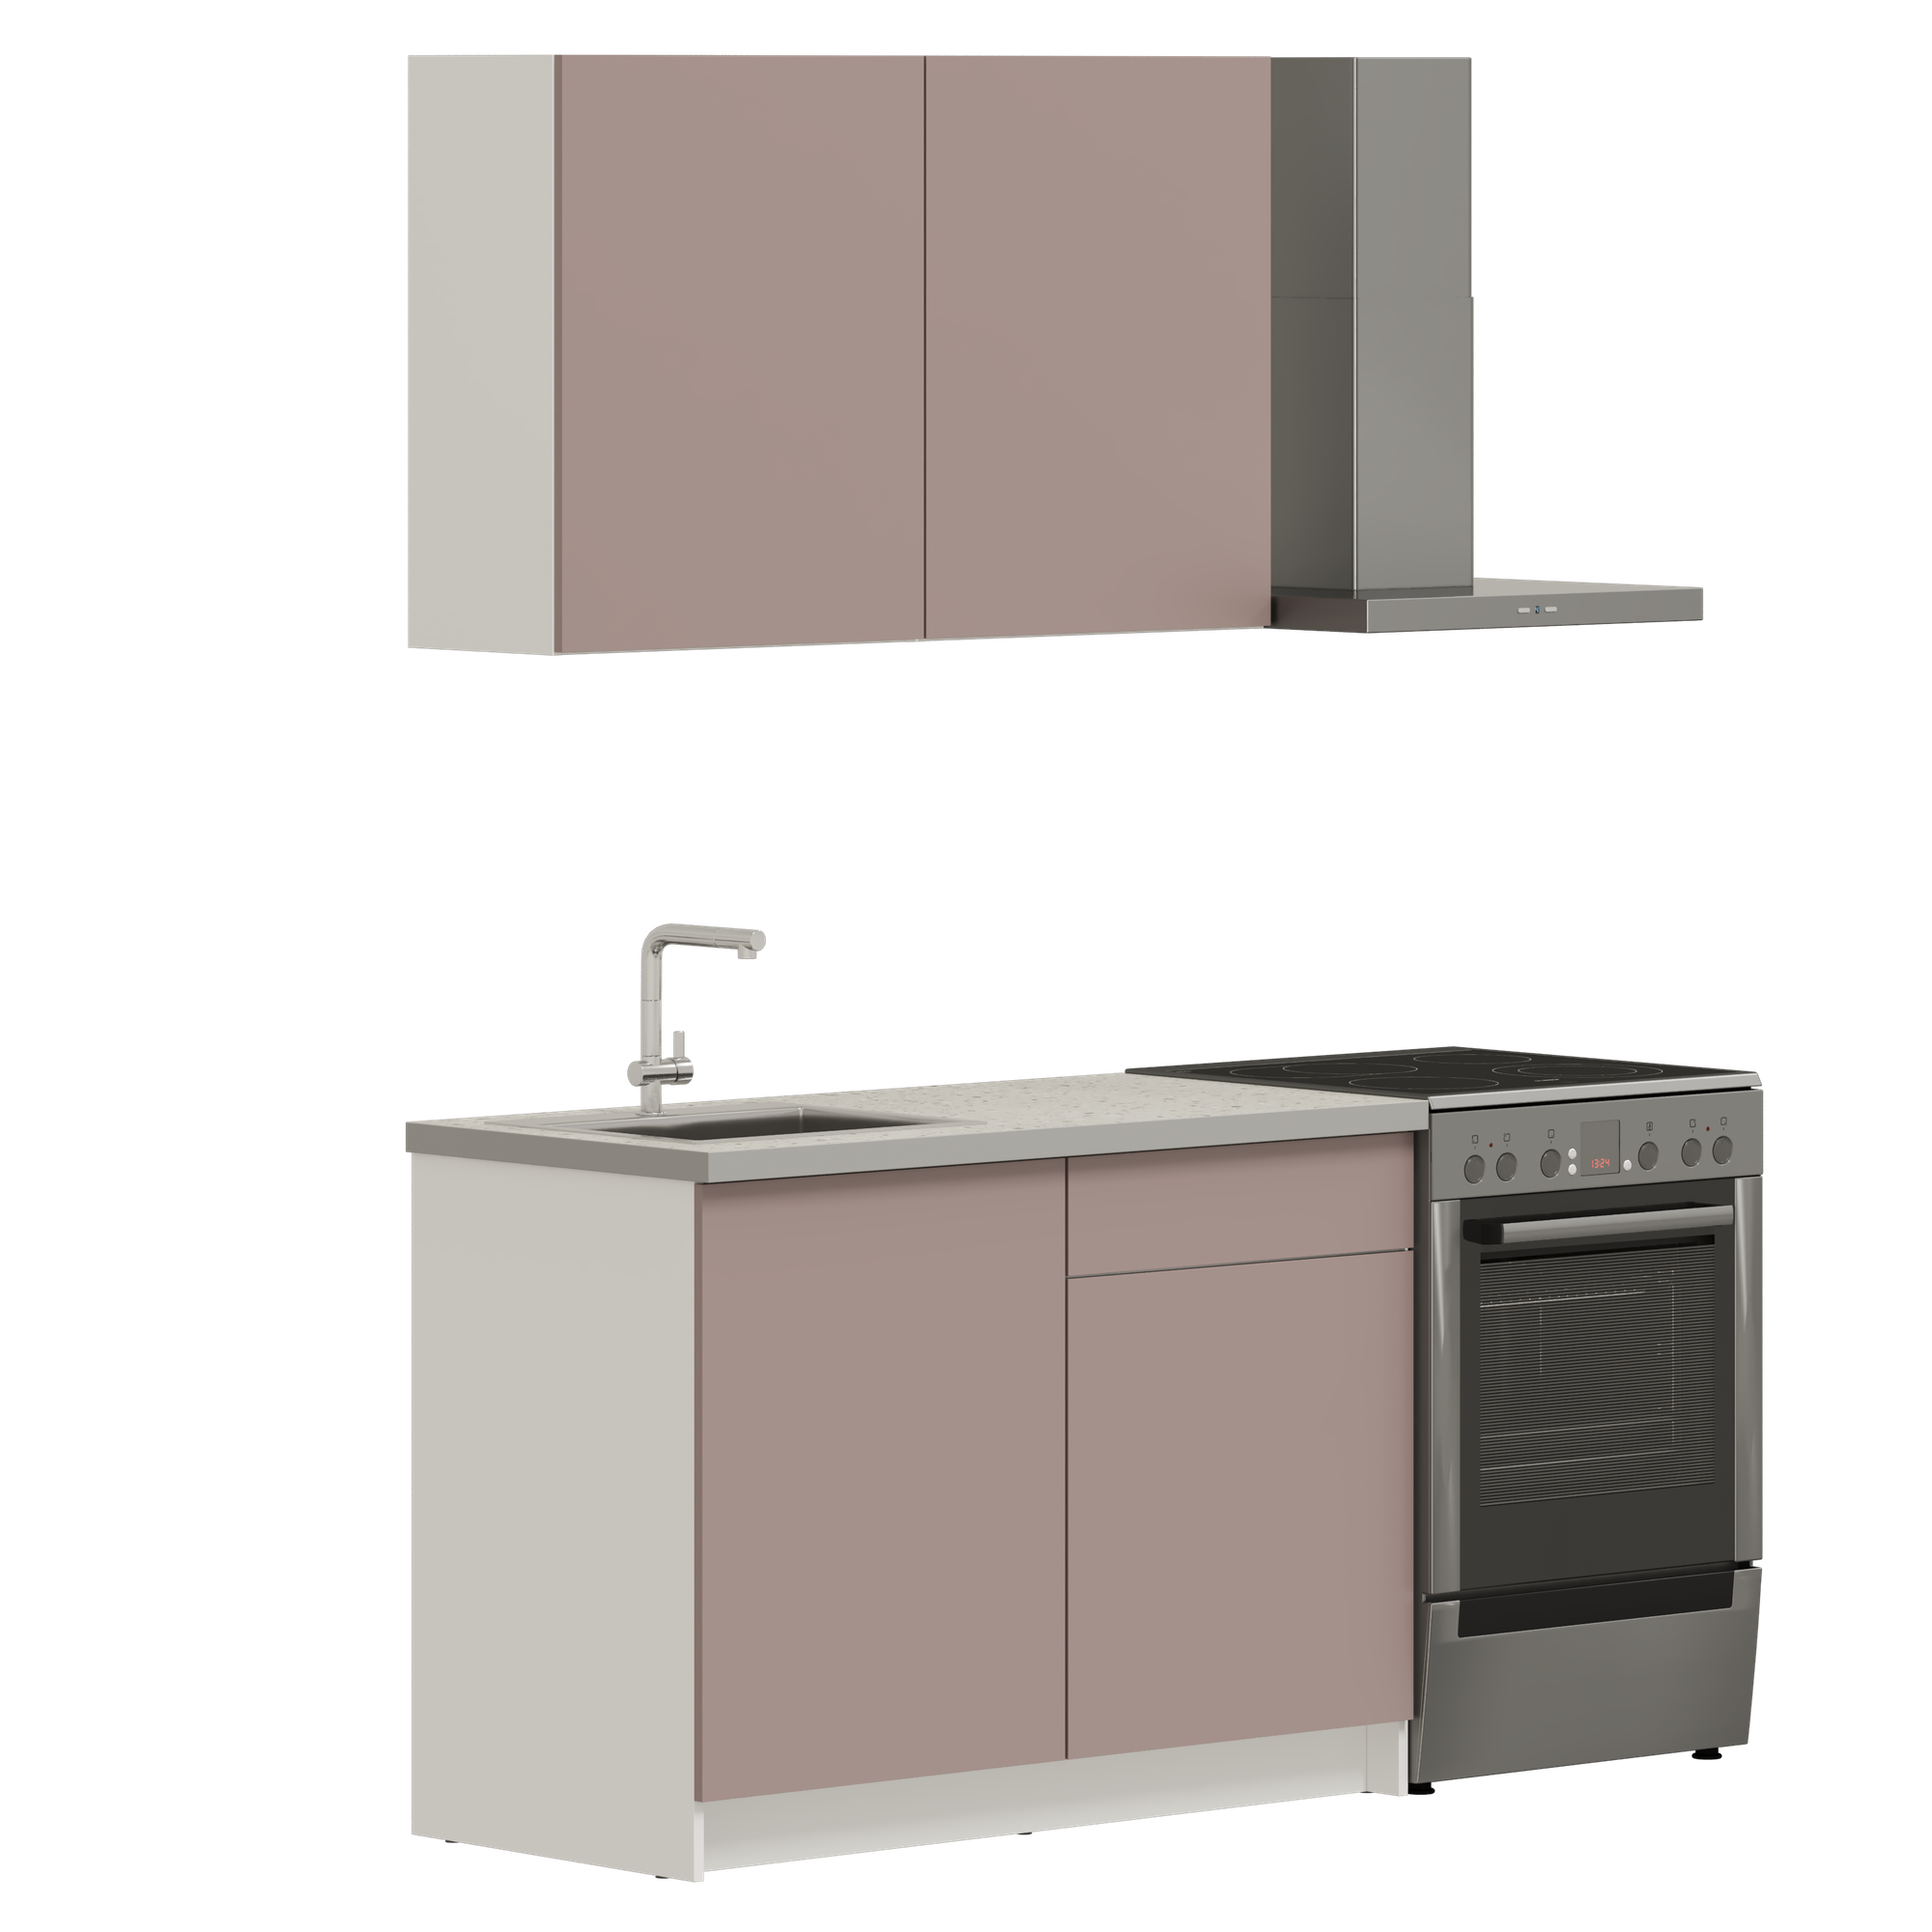 Кухонный гарнитур, кухня прямая илинда 121 см (1,21 м), со столешницей, ЛДСП, пыльный розовый